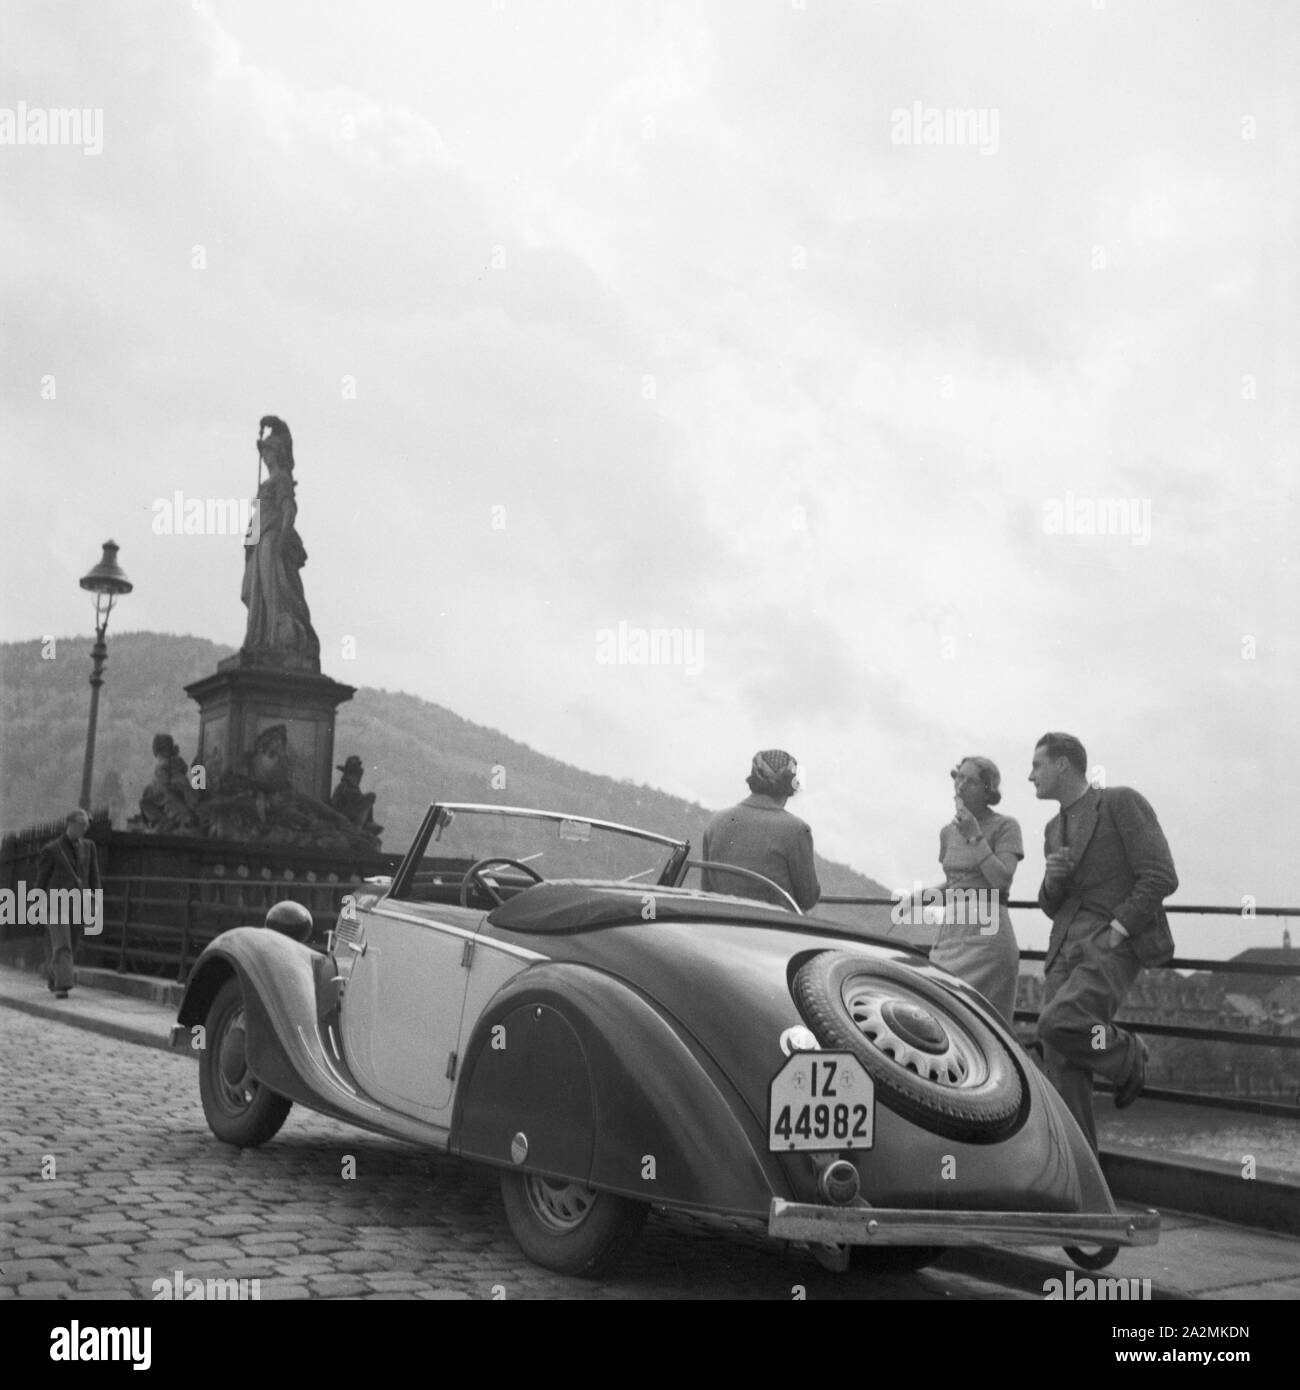 Mit dem Ford Eifel unterwegs in Heidelberg in der Pfalz, Deutschland 1930er Jahre. Con il modello Ford Eifel a Heidelberg nella zona del Palatinato, Germania 1930s. Foto Stock